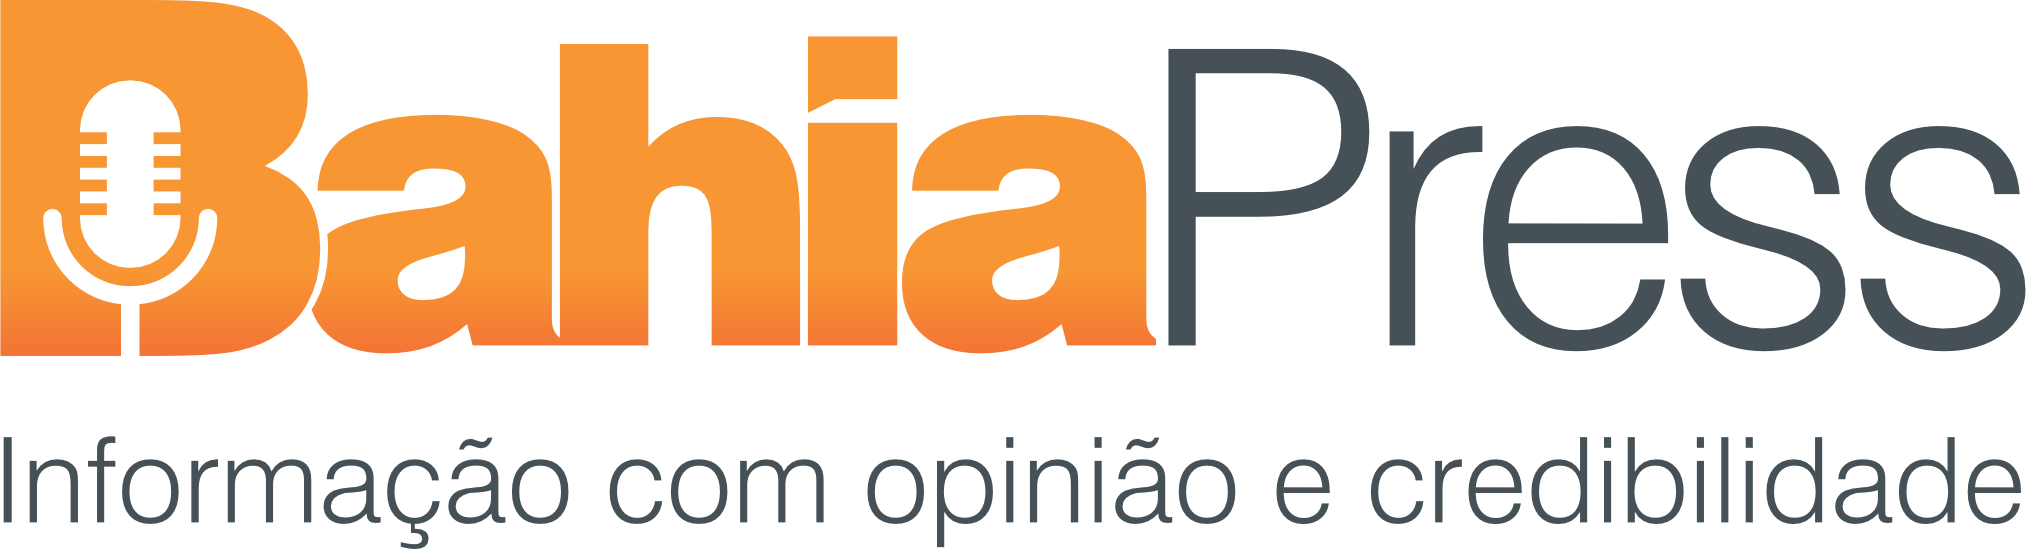 Bahia Press - Informação com opinião e credibilidade